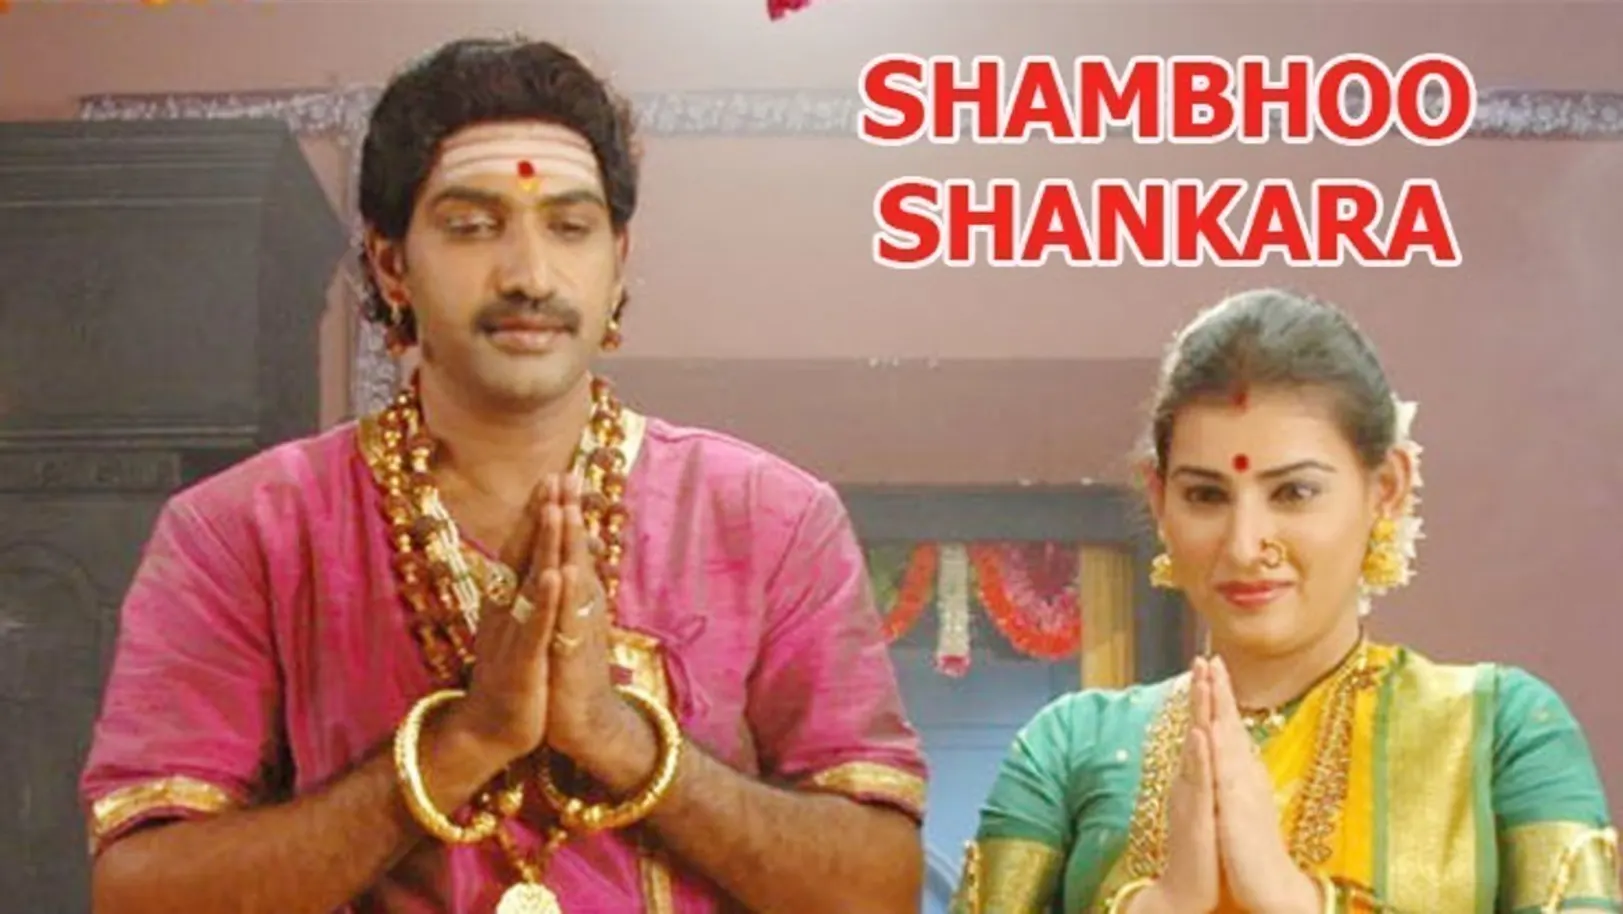 Shambho Shankara Movie